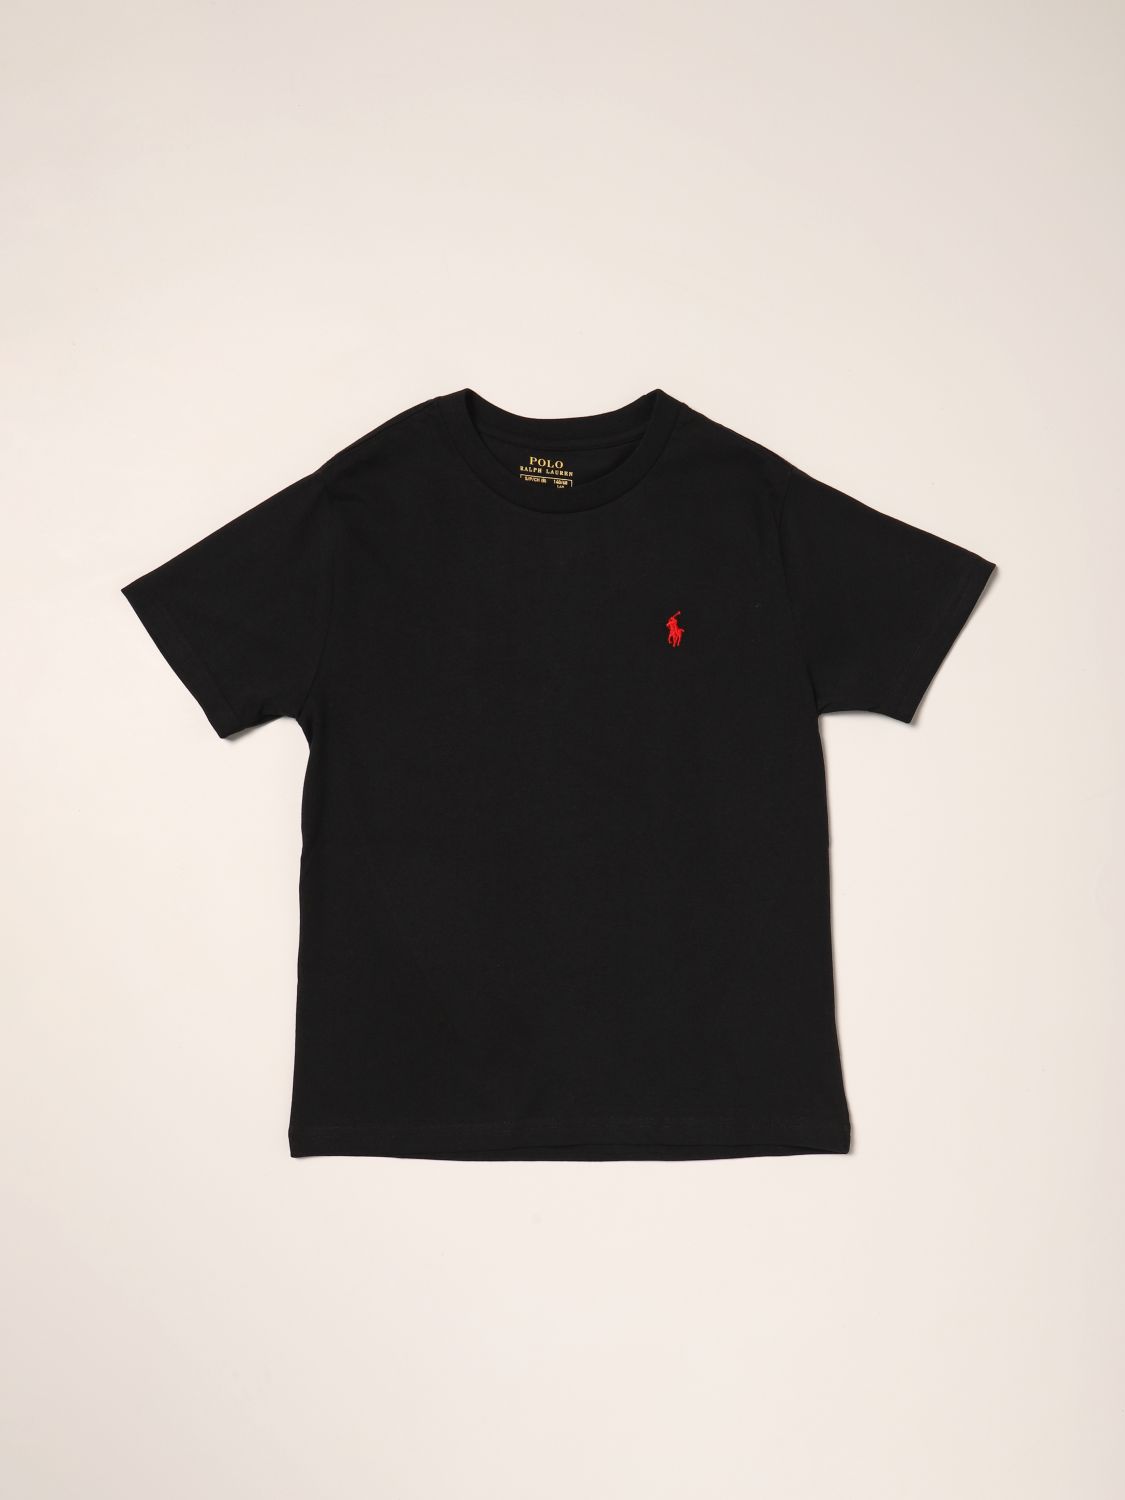 Tシャツ ポロラルフローレン: Tシャツ Polo Ralph Lauren 男の子 ブラック 1